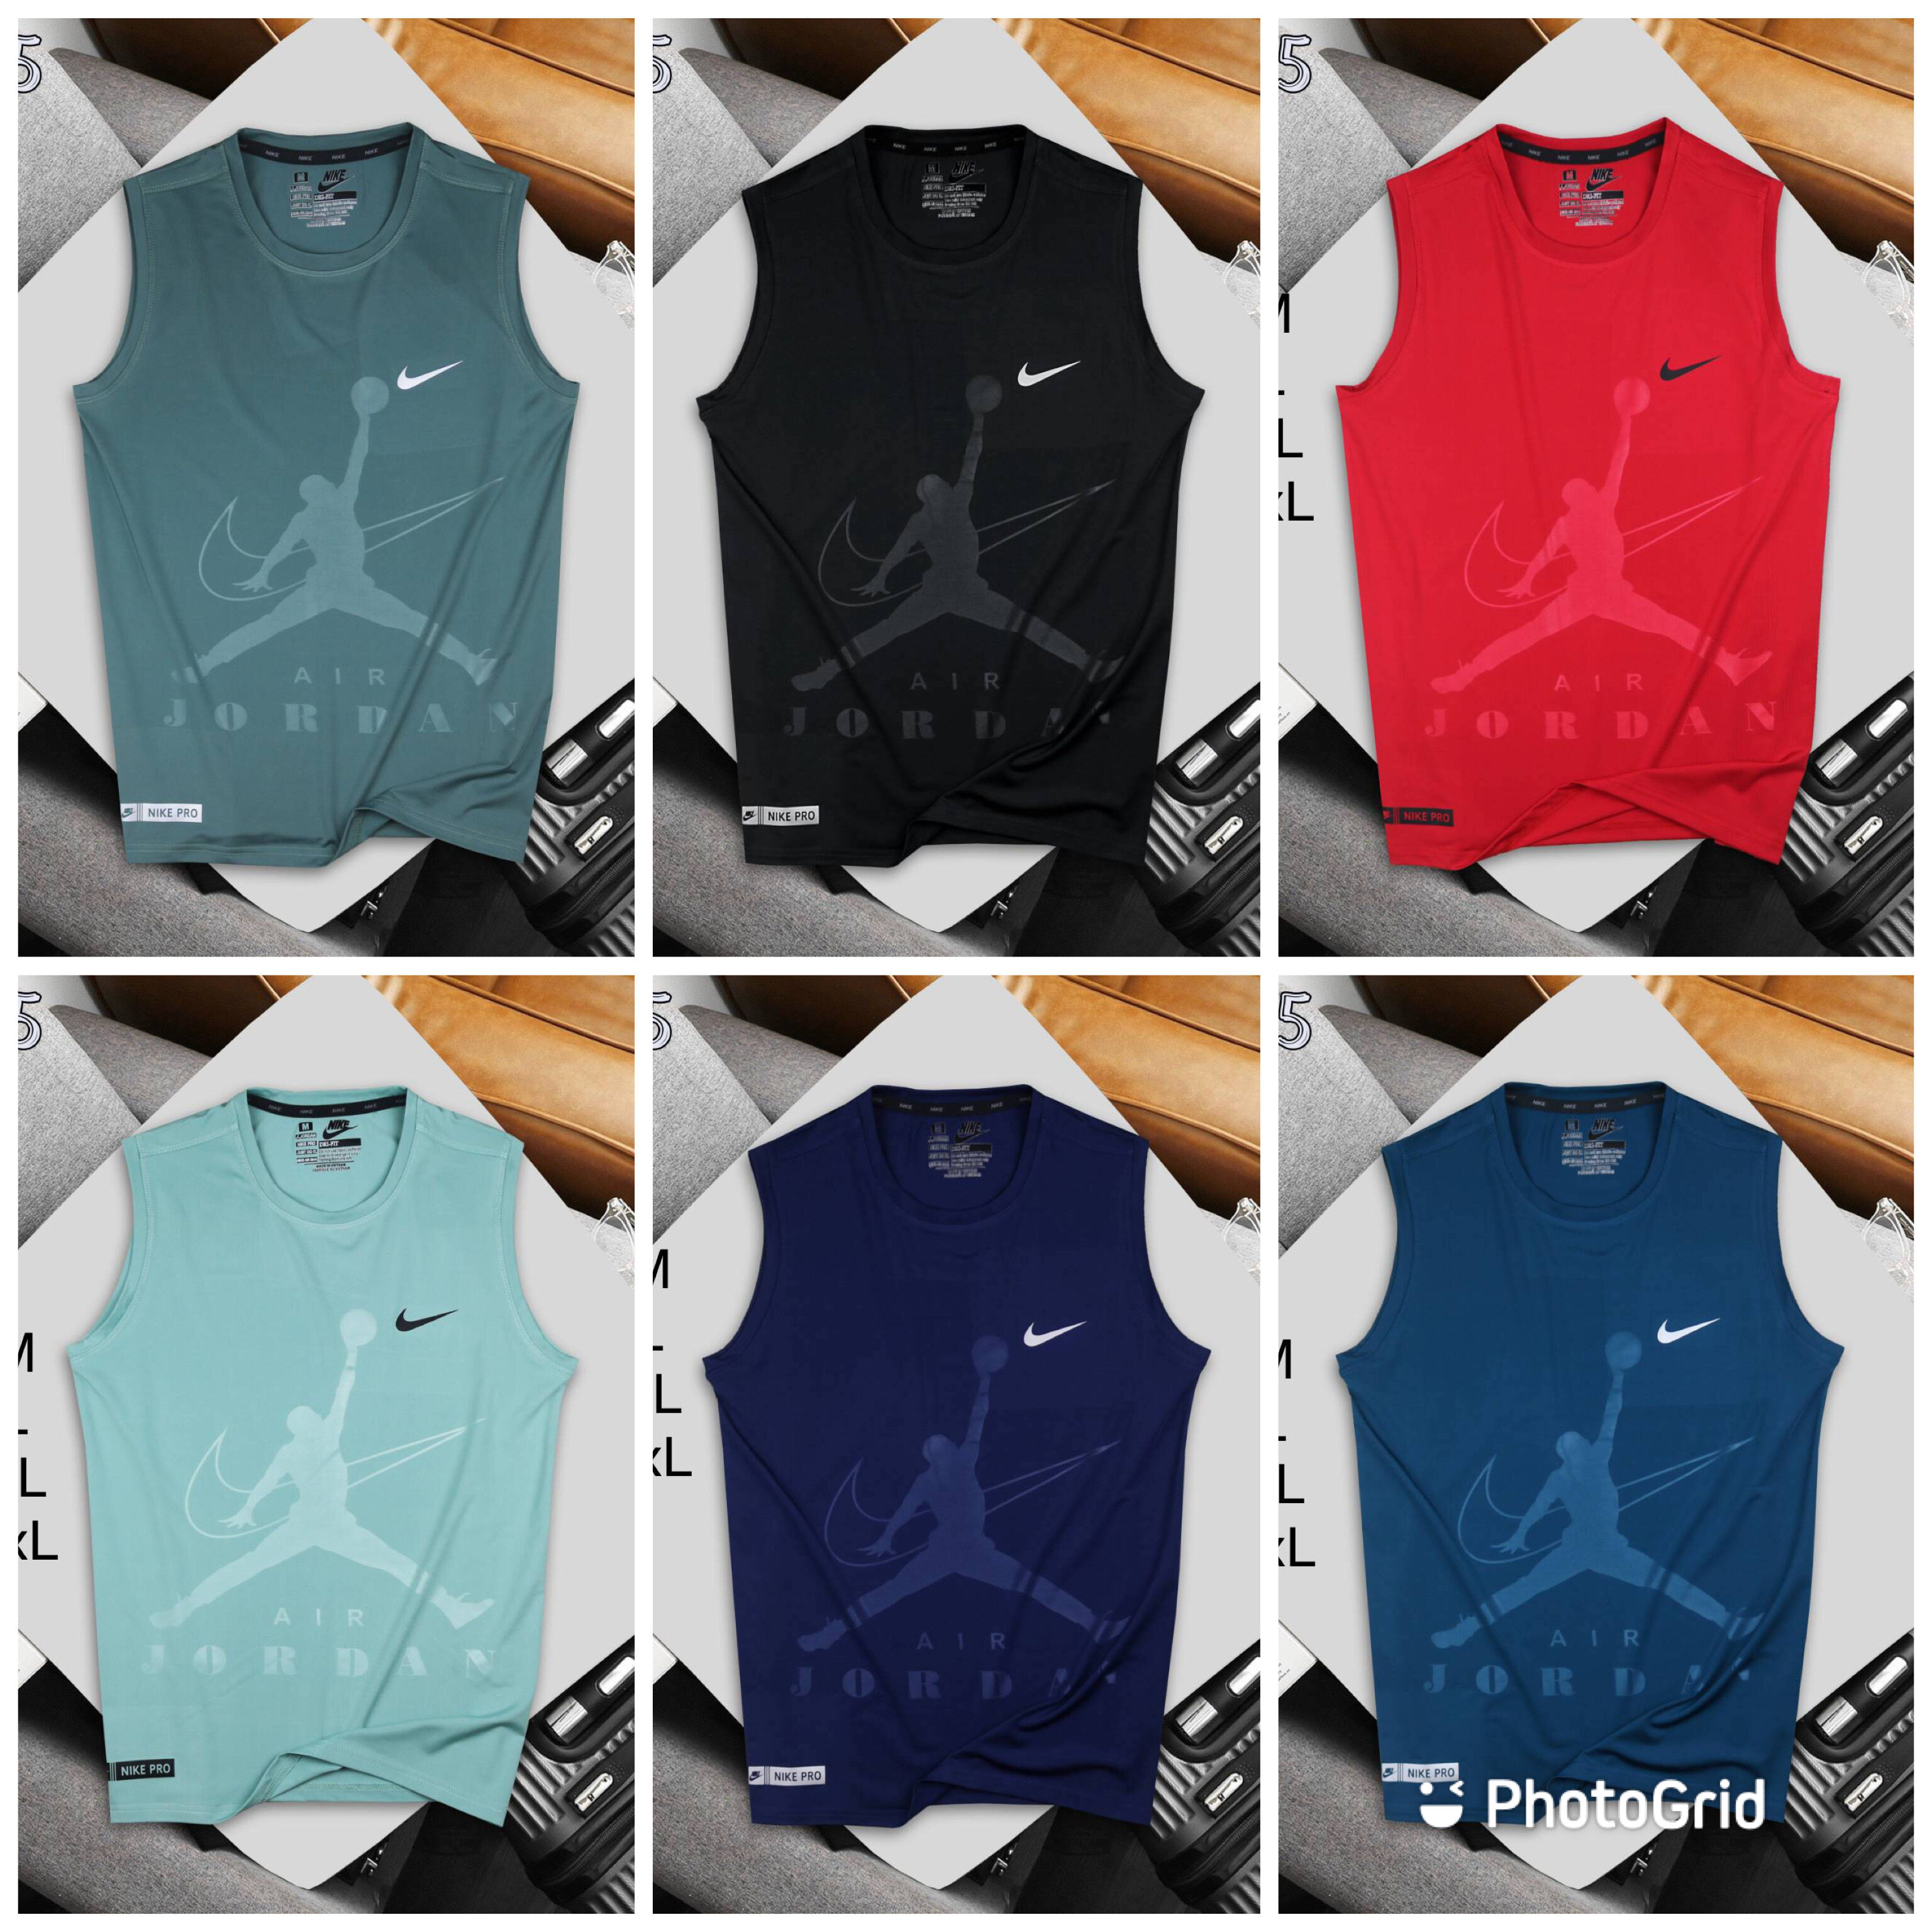 ของแท้อย่างเป็นทางการ Nike Unisex เสื้อกั๊กกีฬา วรรคเดียวกันในห้าง Y026-02